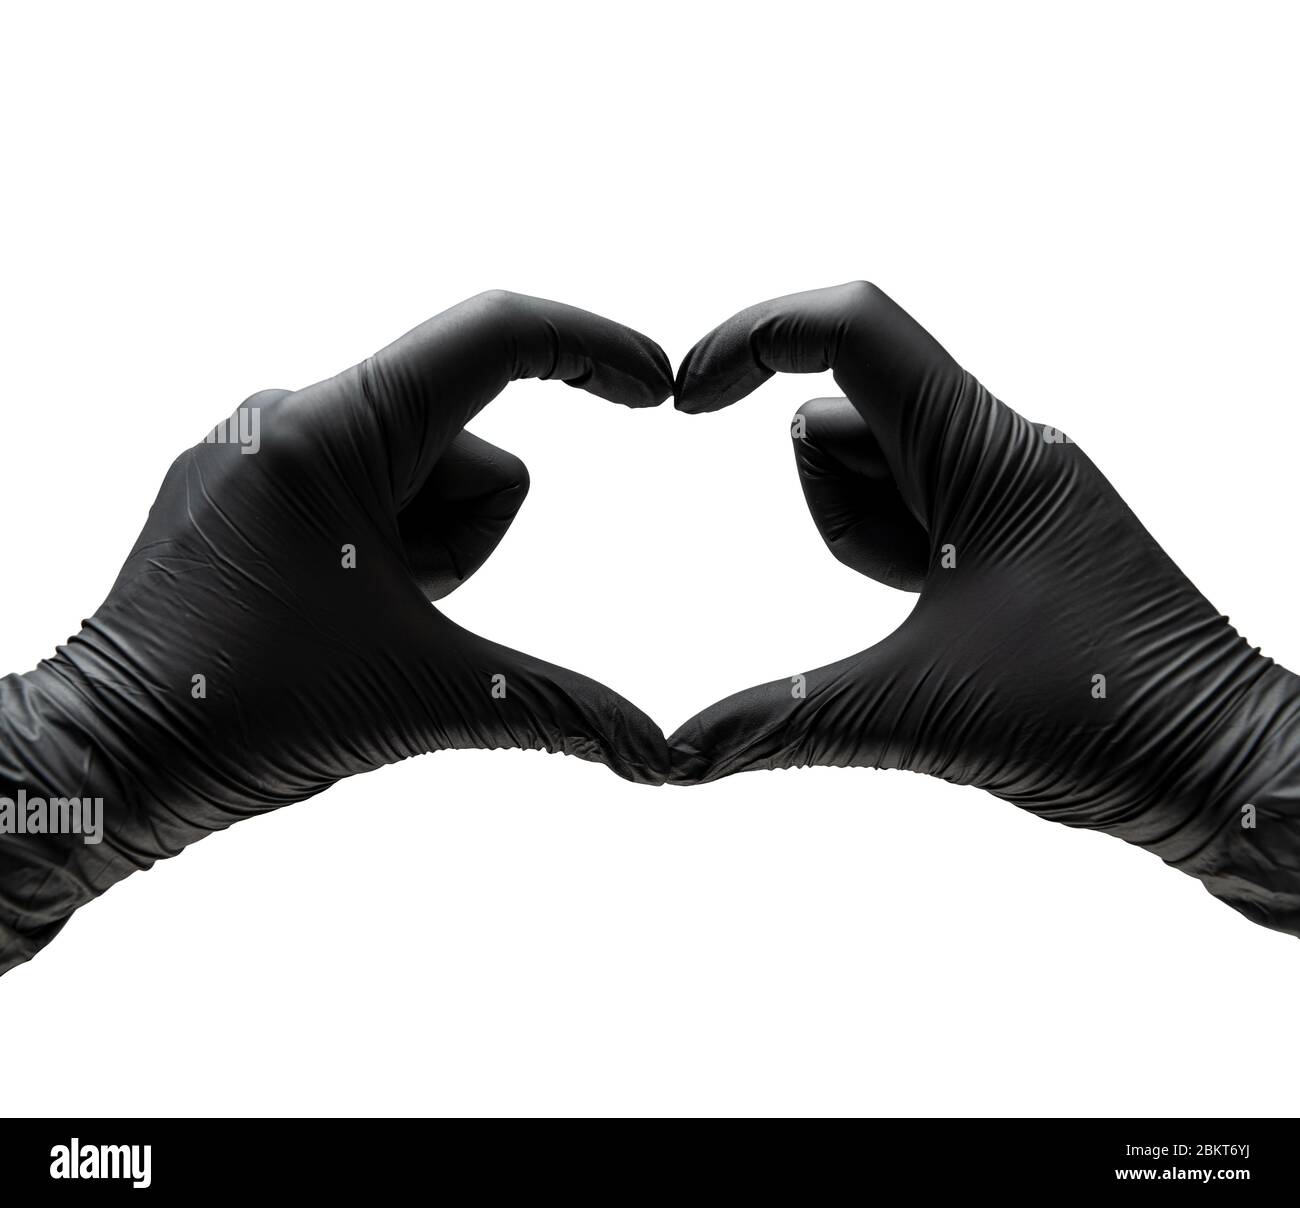 Mano de hombre formando un corazón con guantes de nitrilo en fondo blanco.  Simbolos de afecto y amor con manos. Stock Photo